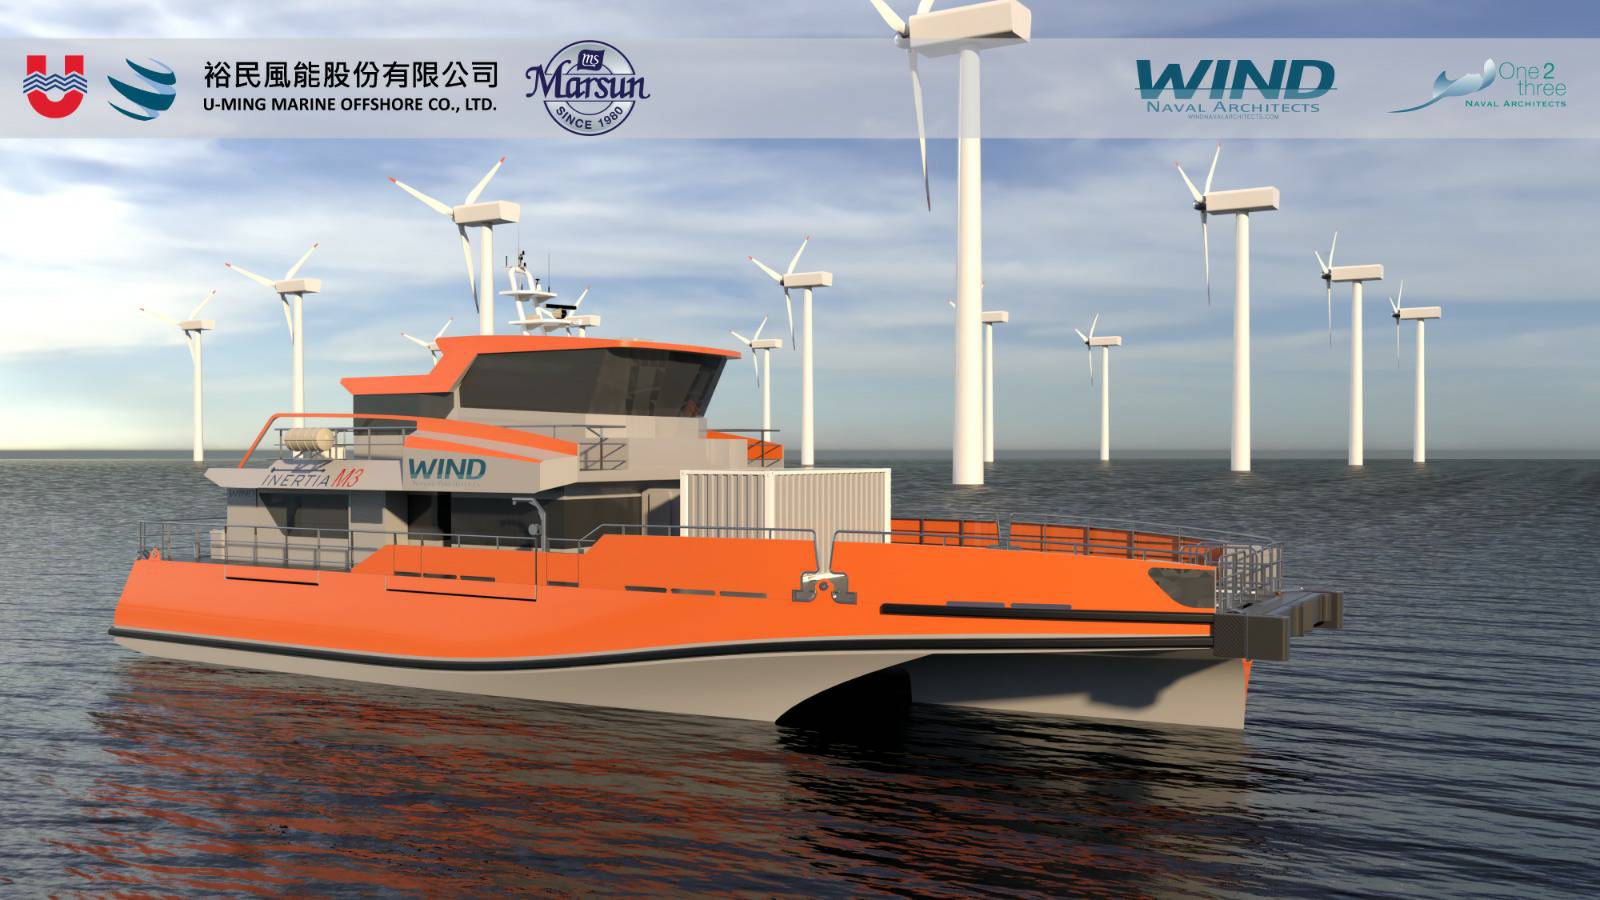 Thai Shipbuilder Enters Offshore Wind Market with U-Ming CTV Order